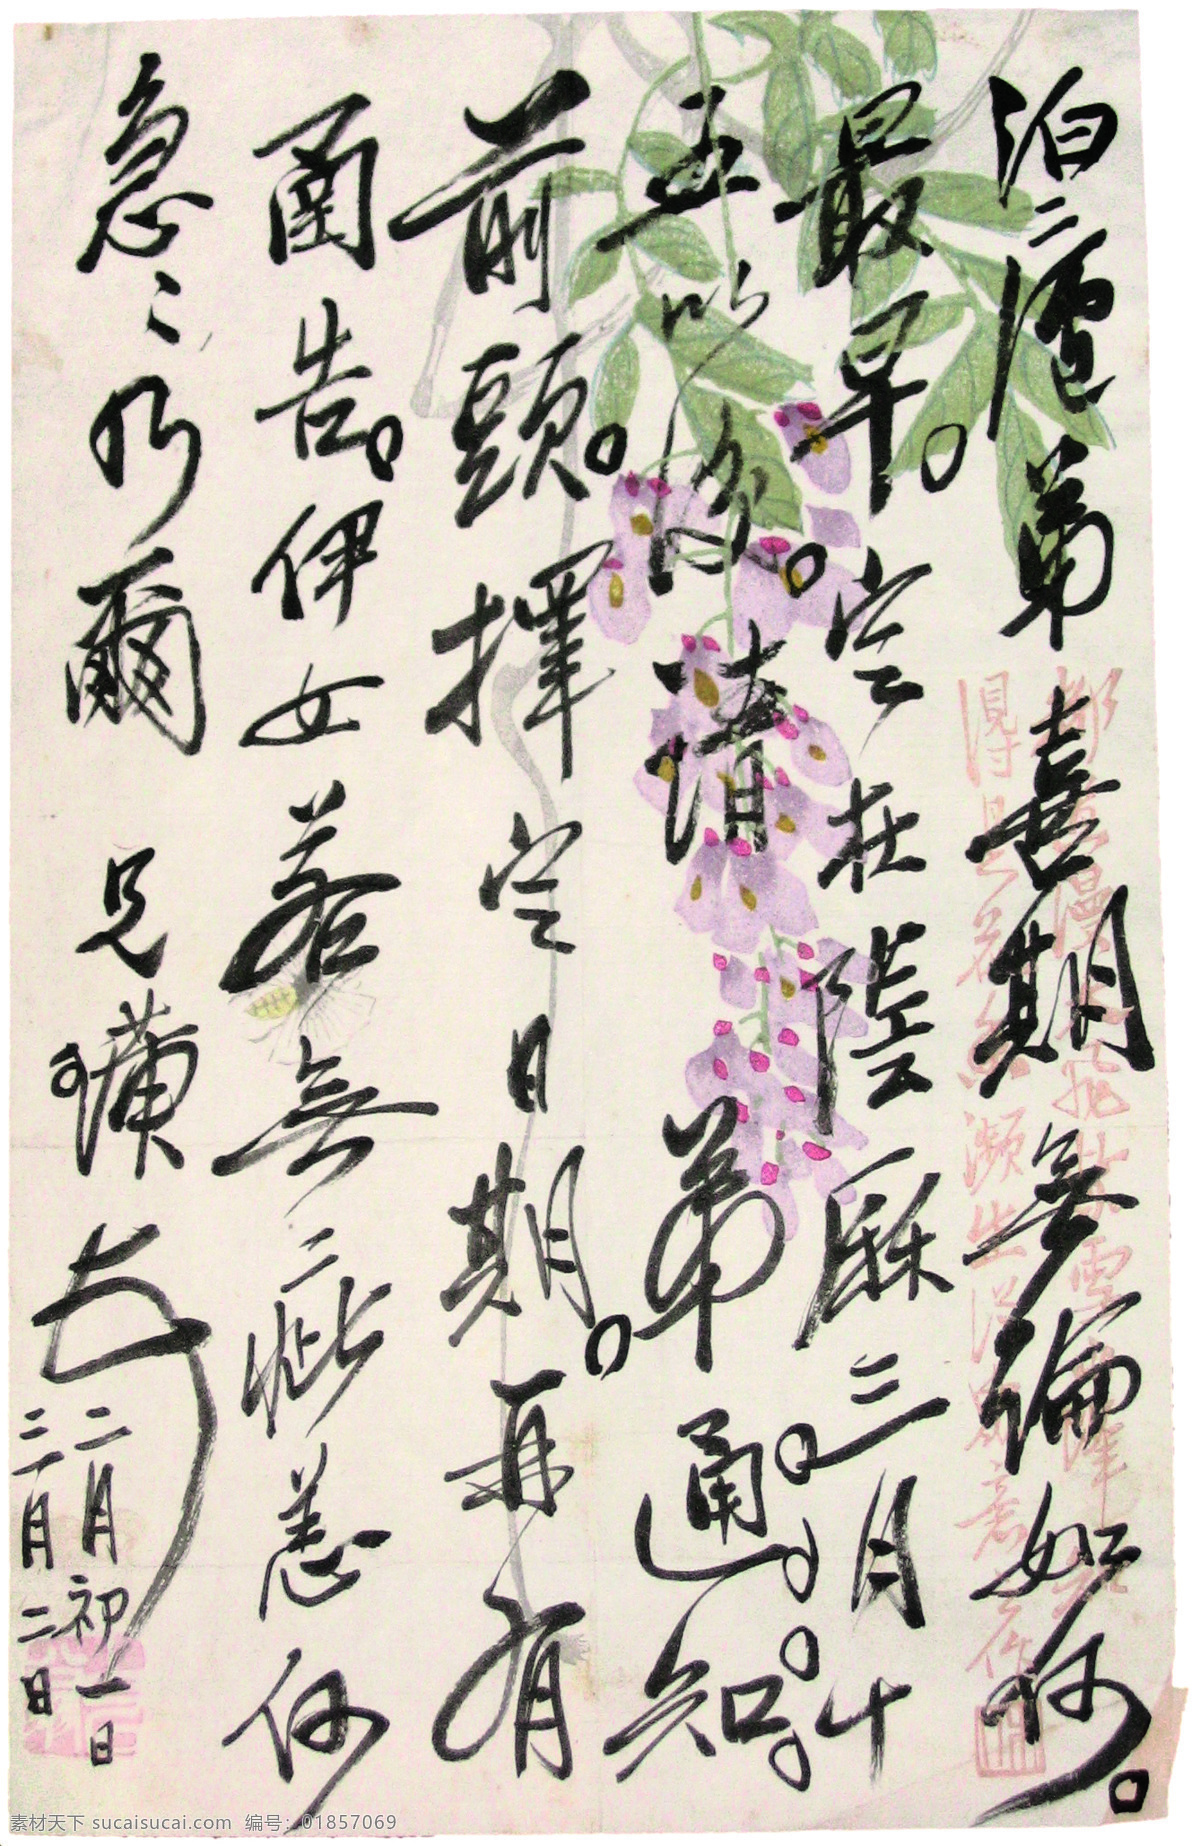 国画 绘画书法 齐白石 文化艺术 写信 信 设计素材 模板下载 紫藤萝 齐璜